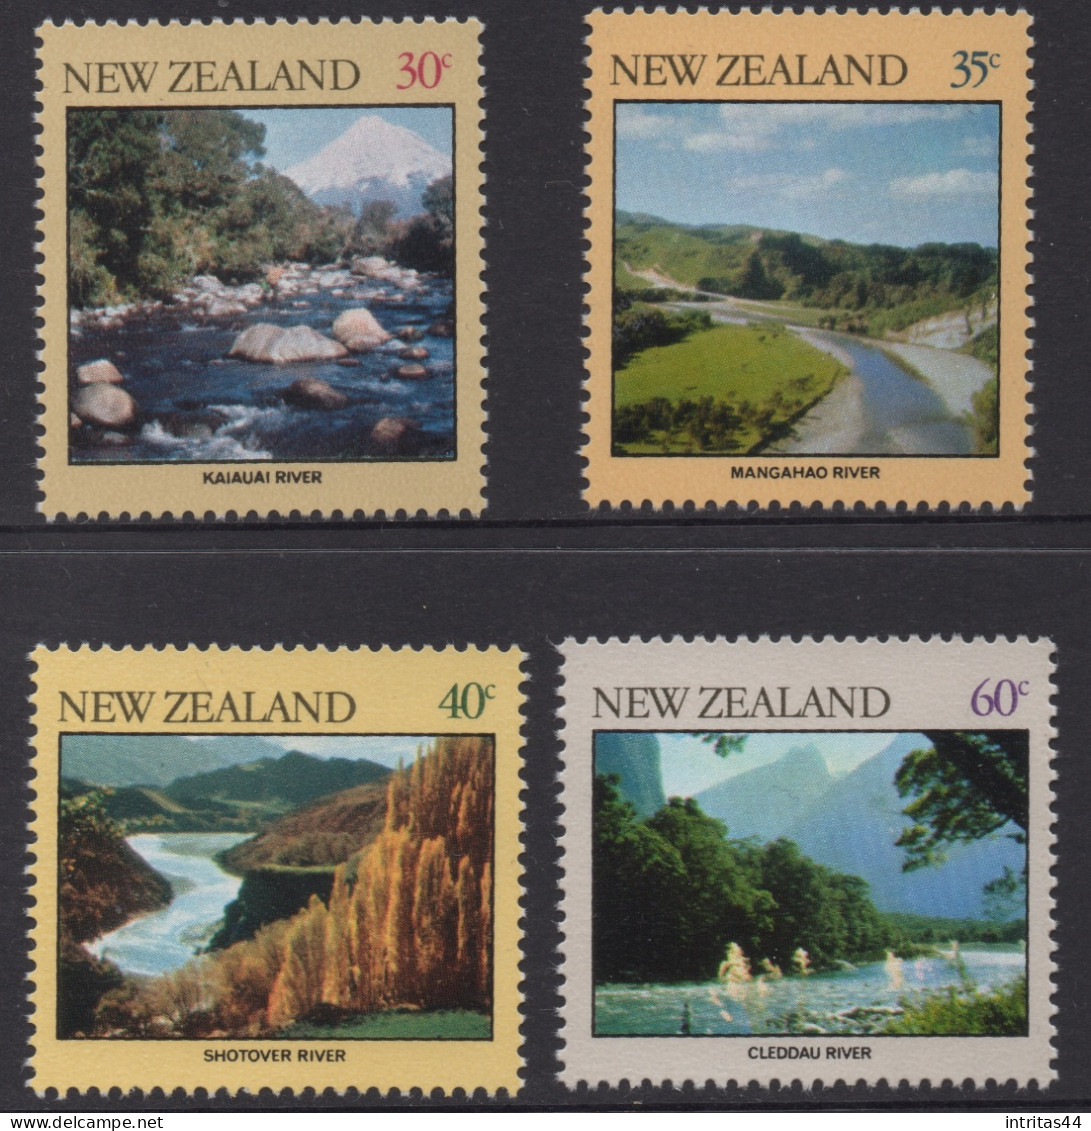 NEW ZEALAND 1981 " RIVERS " SET MNH - Nuovi